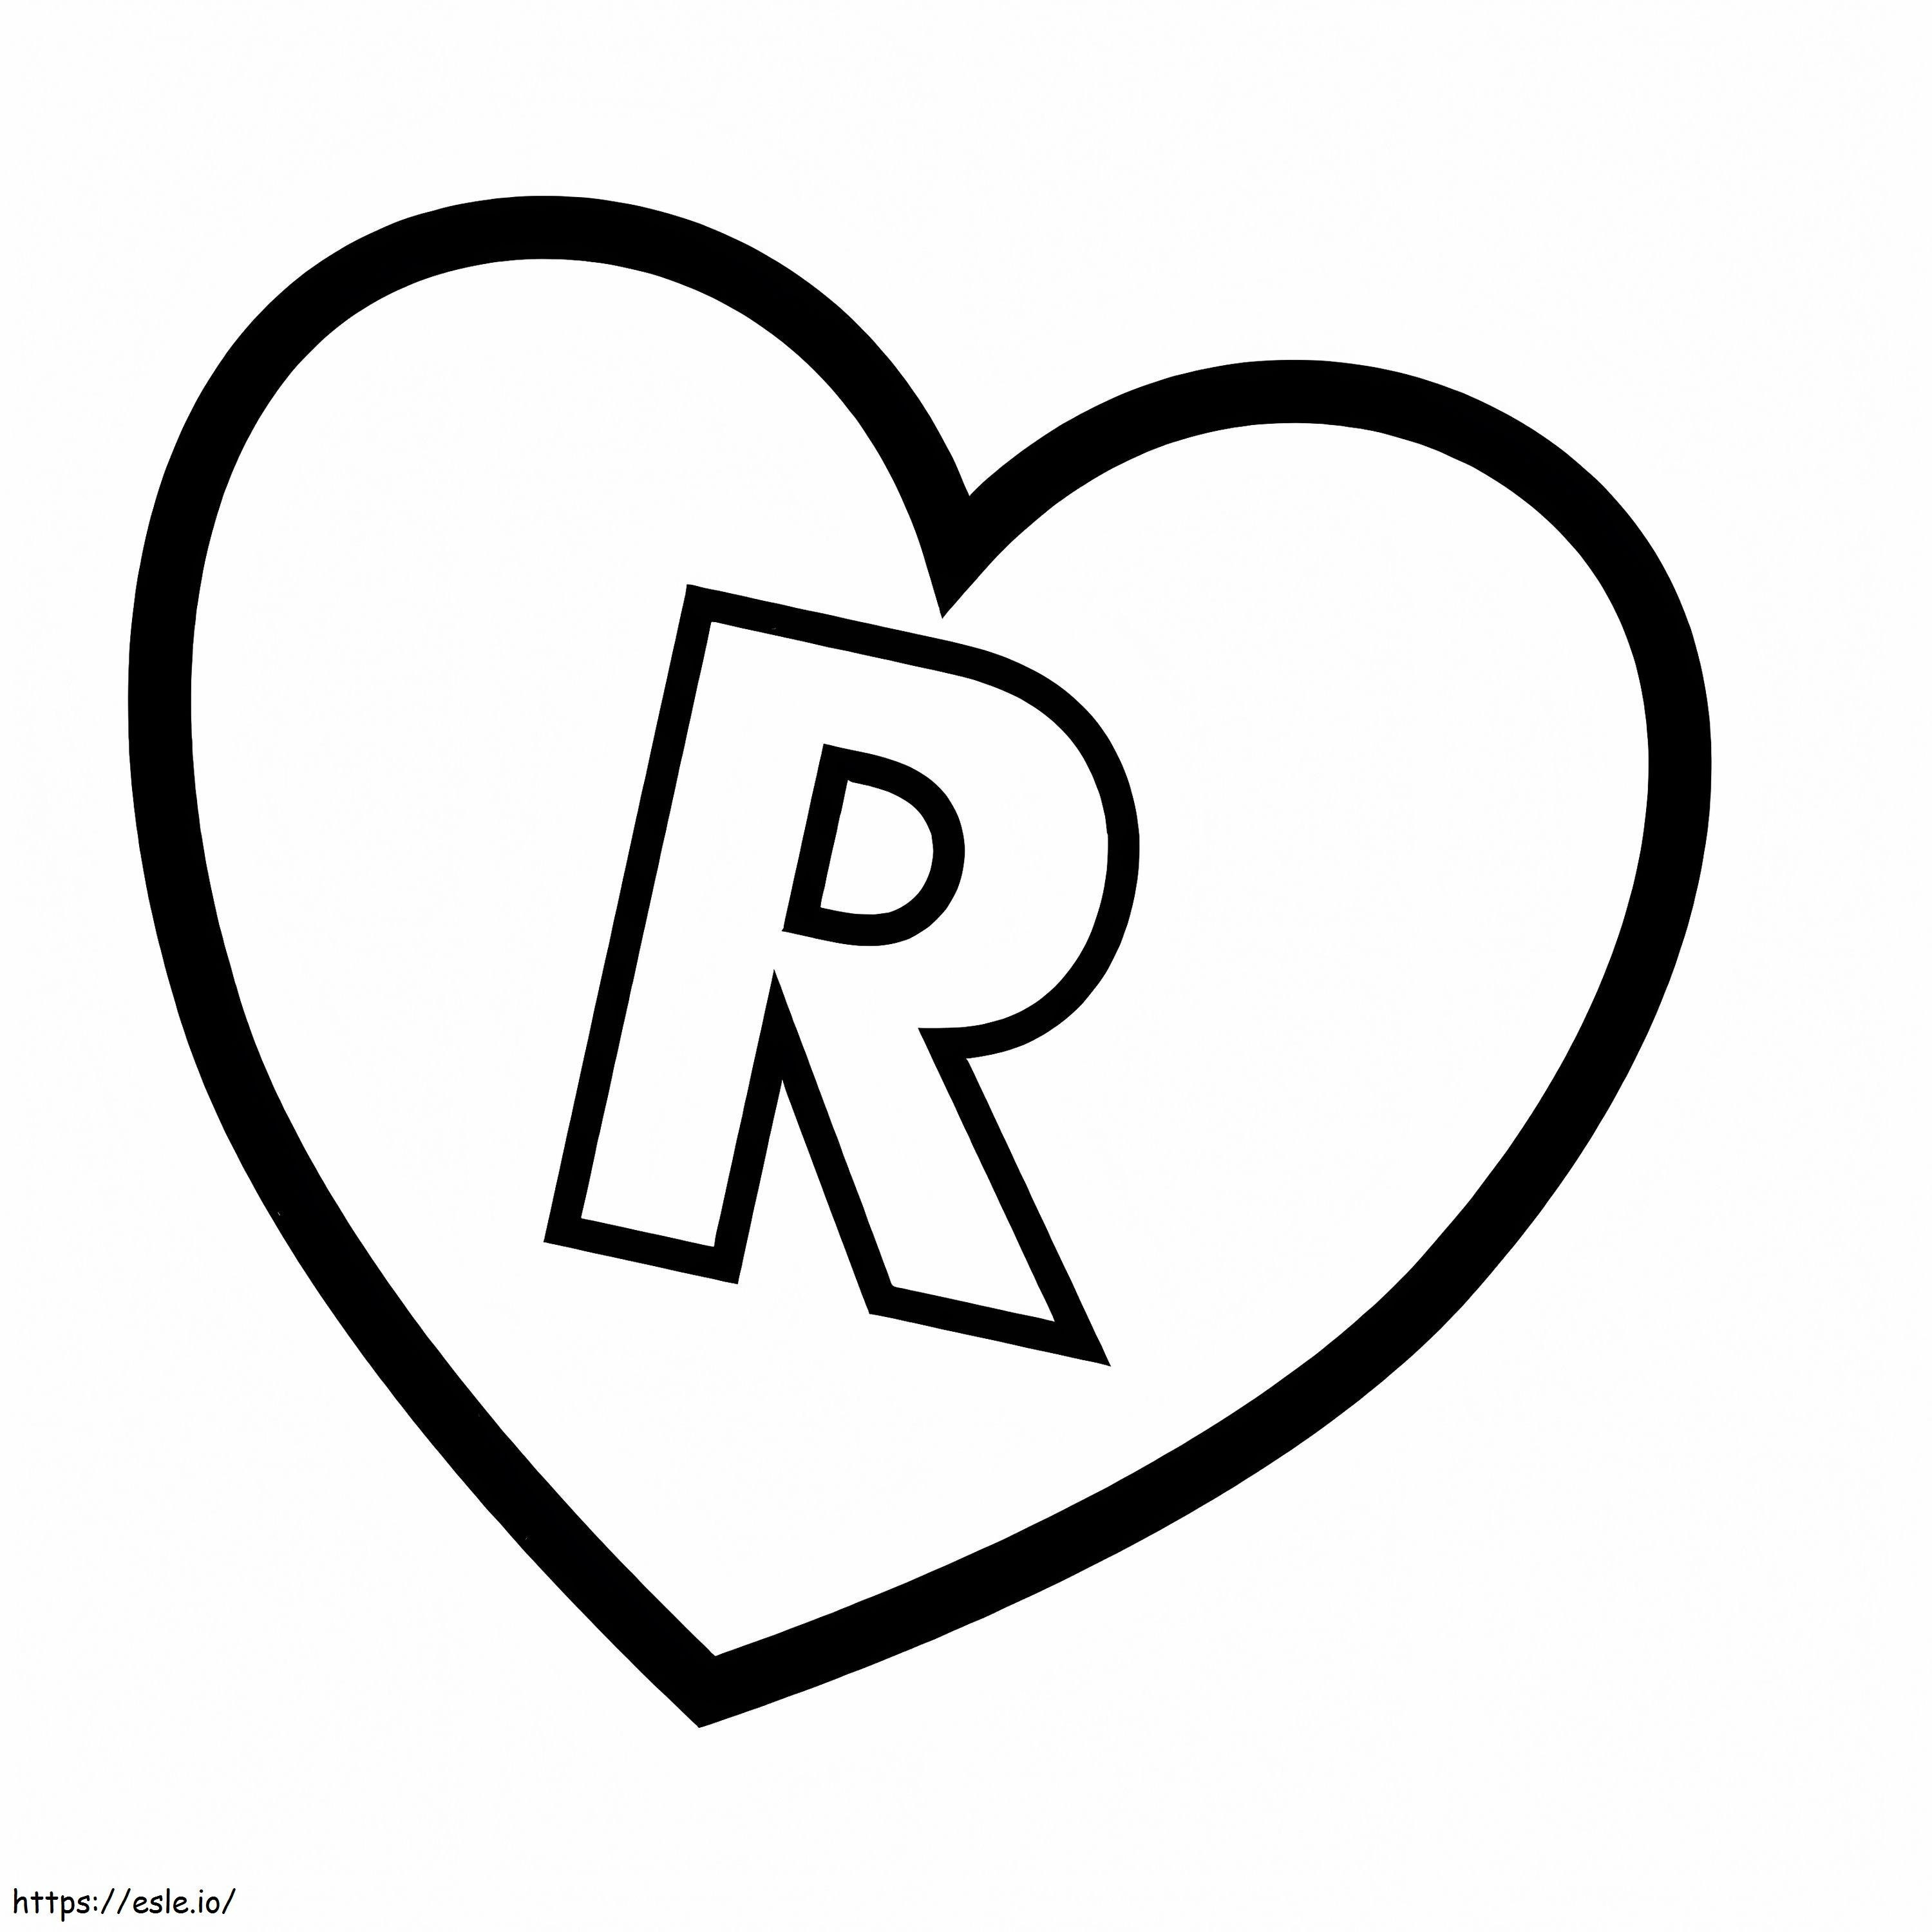 Litera R în inimă de colorat